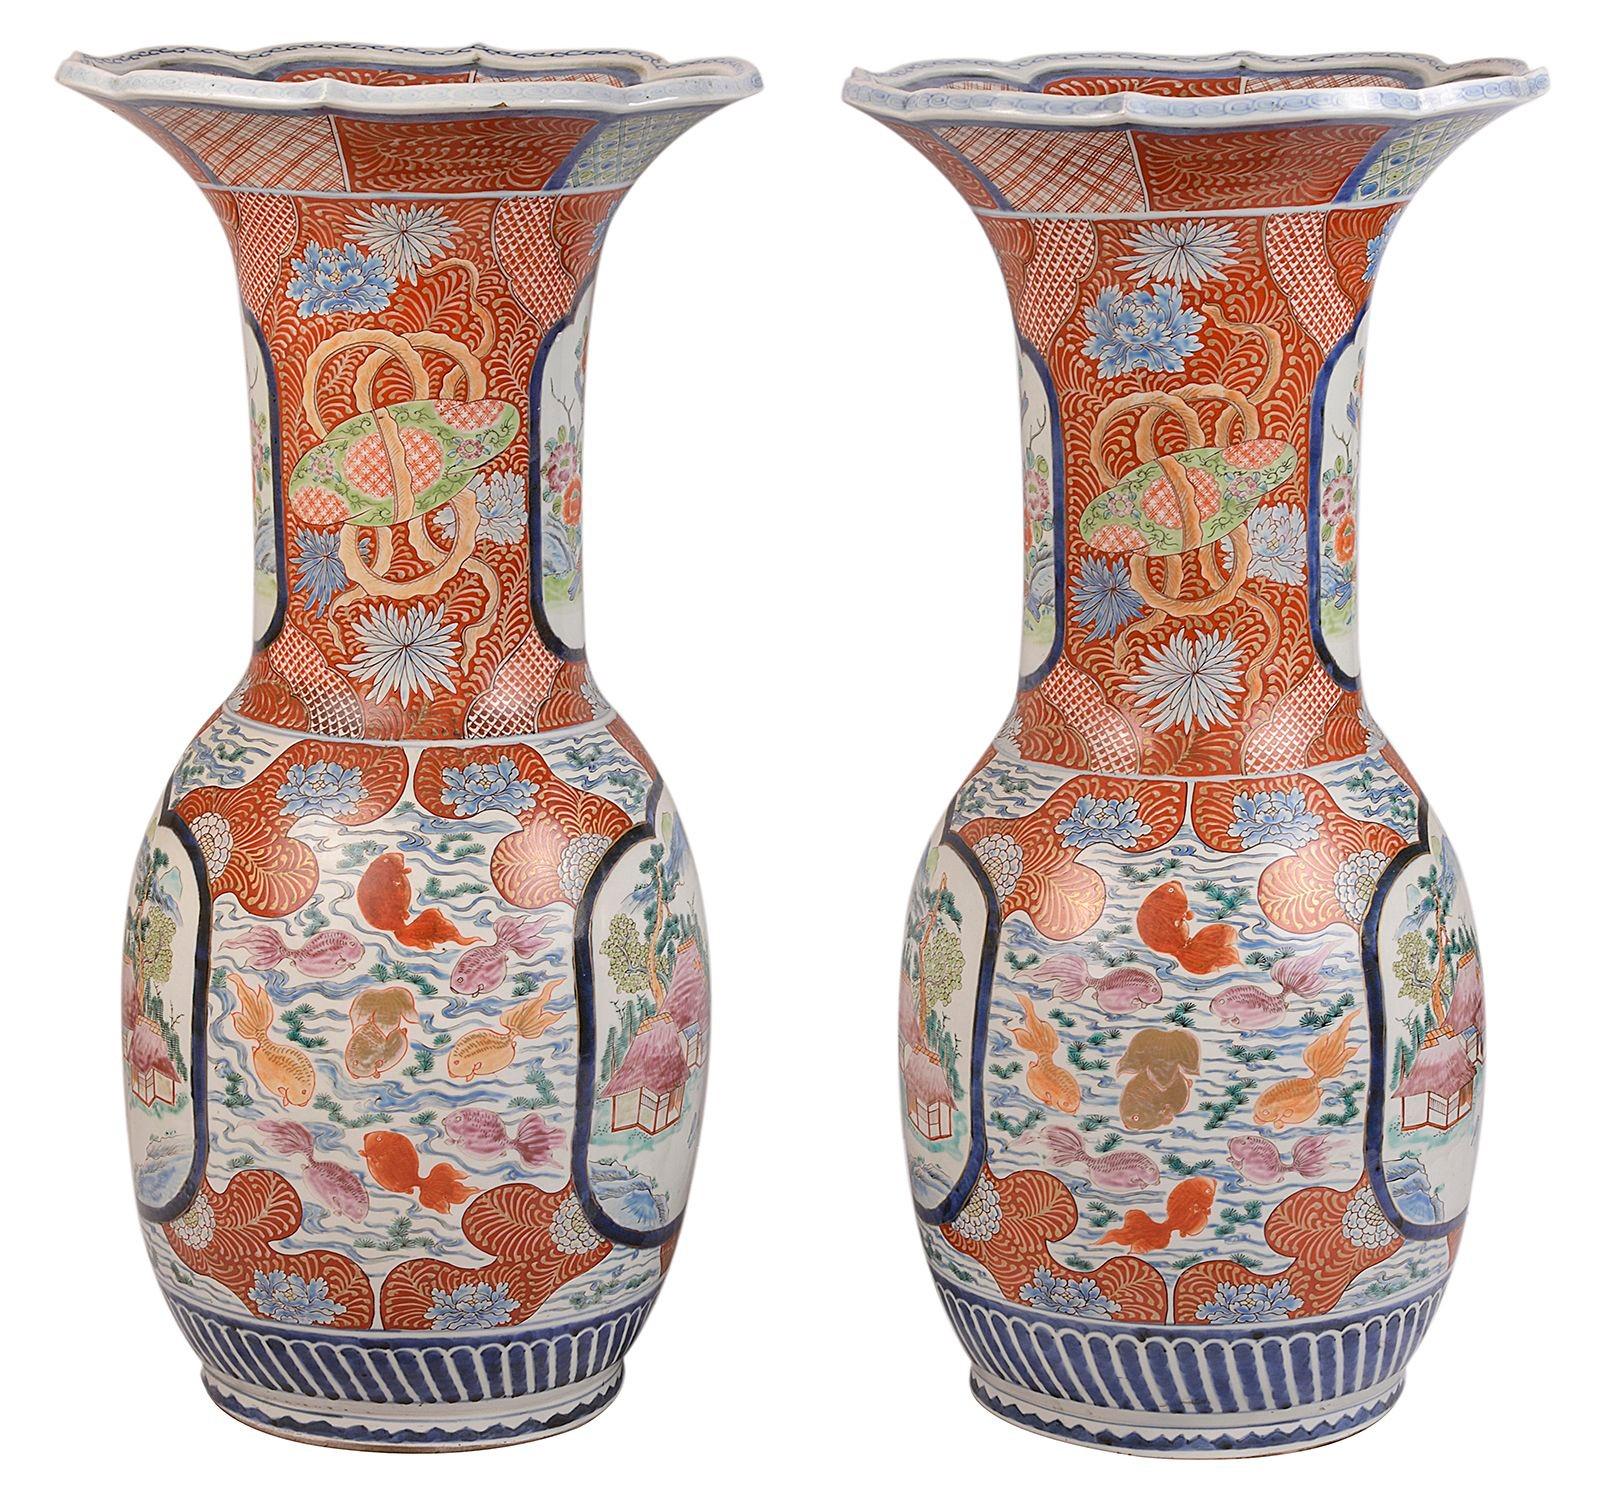 Ein beeindruckendes Paar japanischer Kutani-Vasen mit Schlaghals aus dem späten 19. Jahrhundert, um 1890. Jede mit kräftiger oranger Färbung des klassischen Motivdekors und eingesetzten handgemalten Scheiben, die bergige Szenen mit Gebäuden zwischen